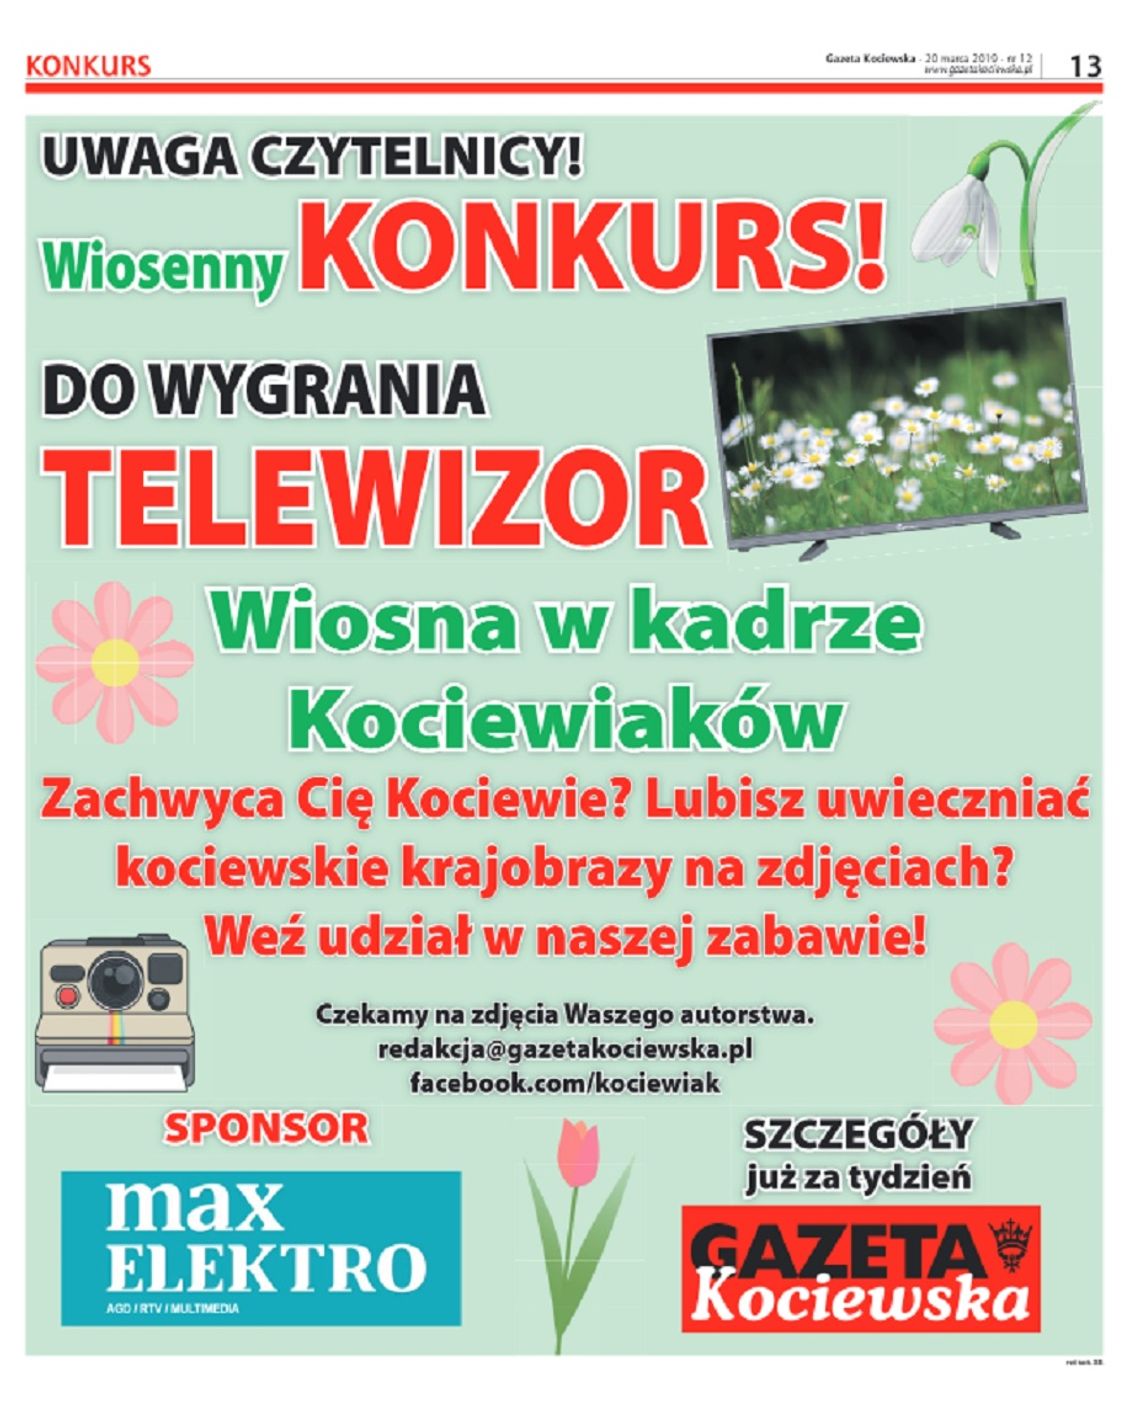 KONKURS! "Wiosna w kadrze Kociewiaków" DO WYGRANIA TELEWIZOR!